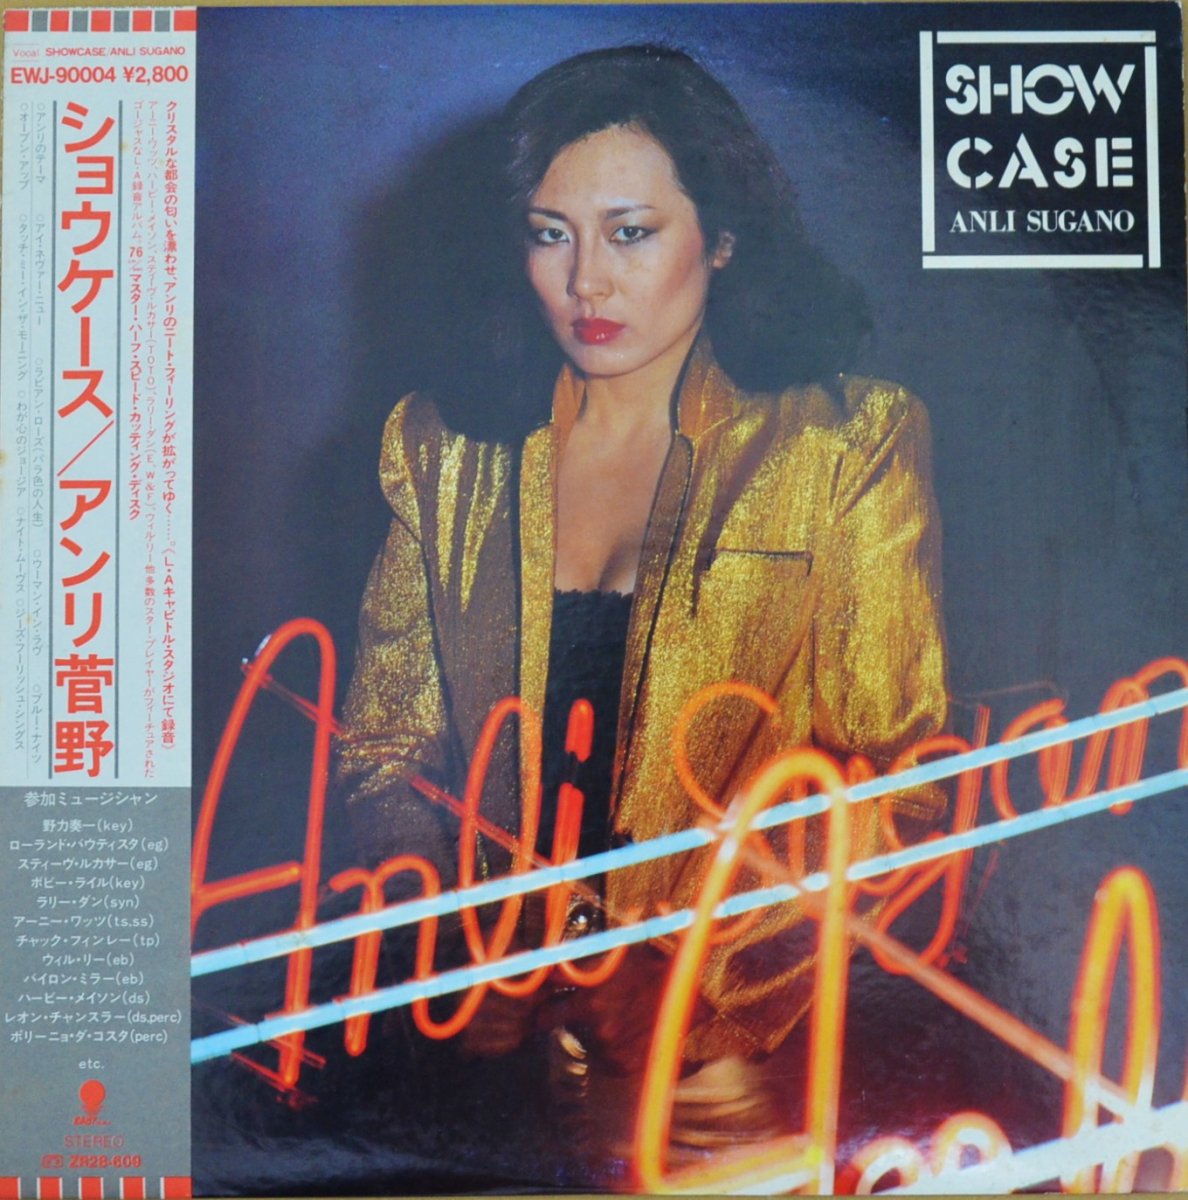 アンリ菅野 ANRI SUGANO / ショウケース SHOW CASE (LP)